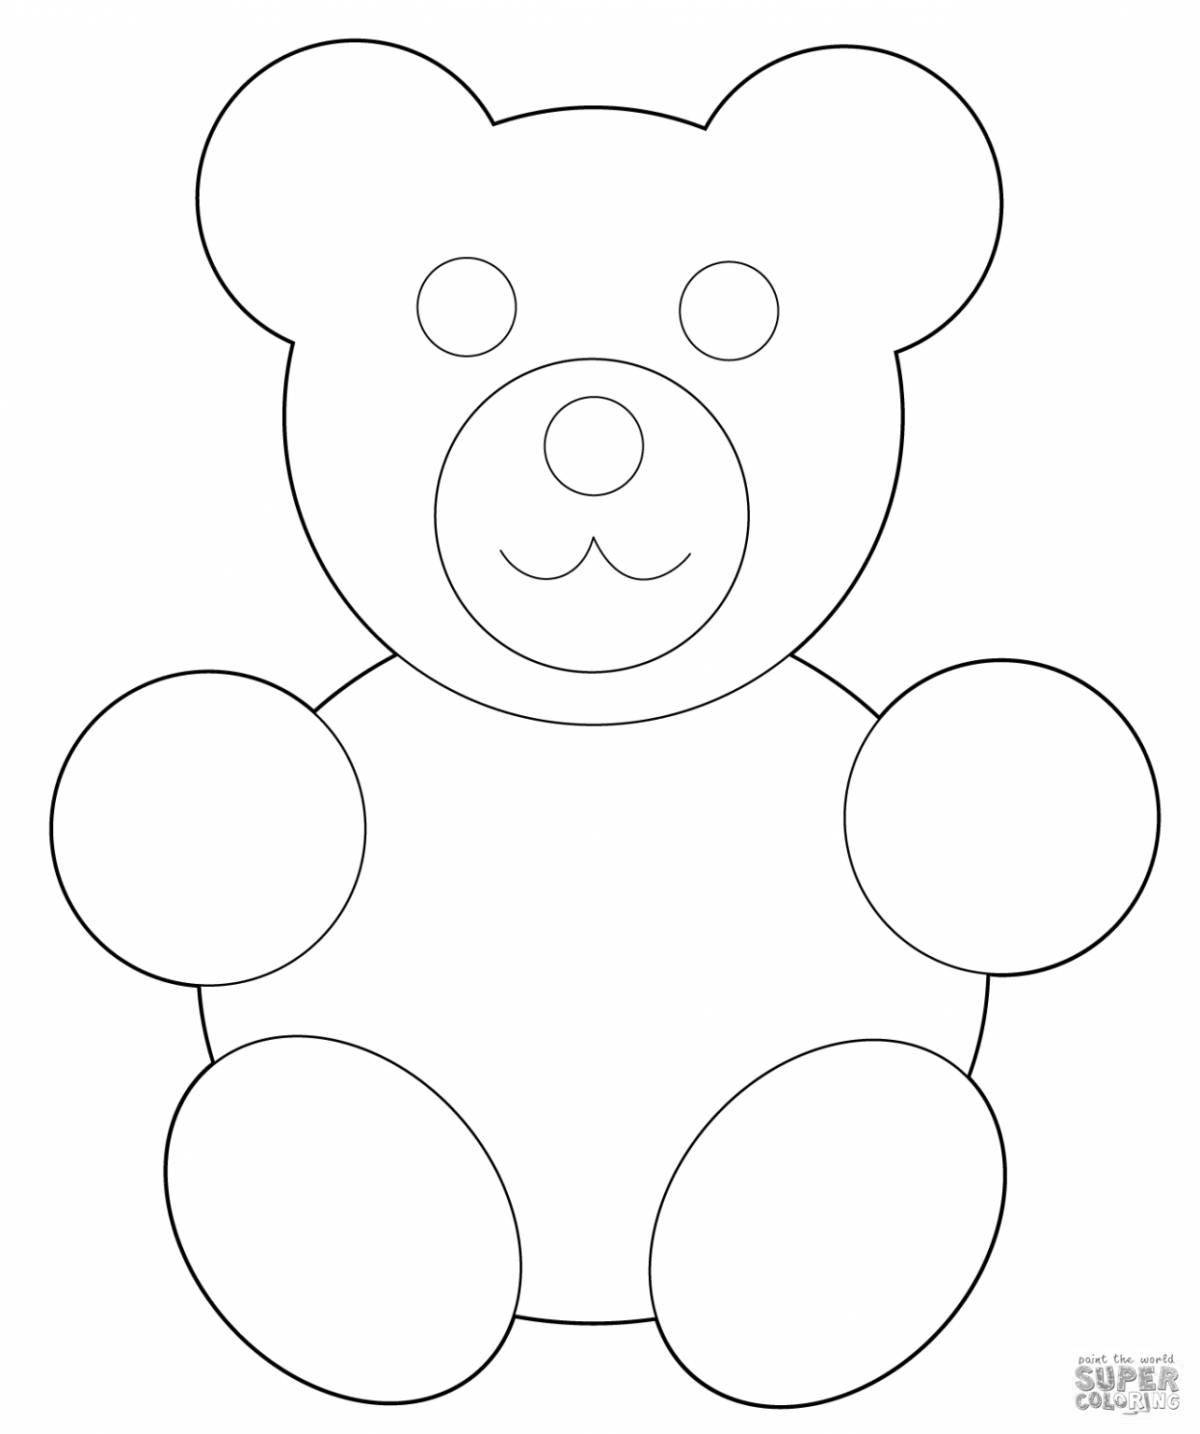 Fun coloring teddy bear